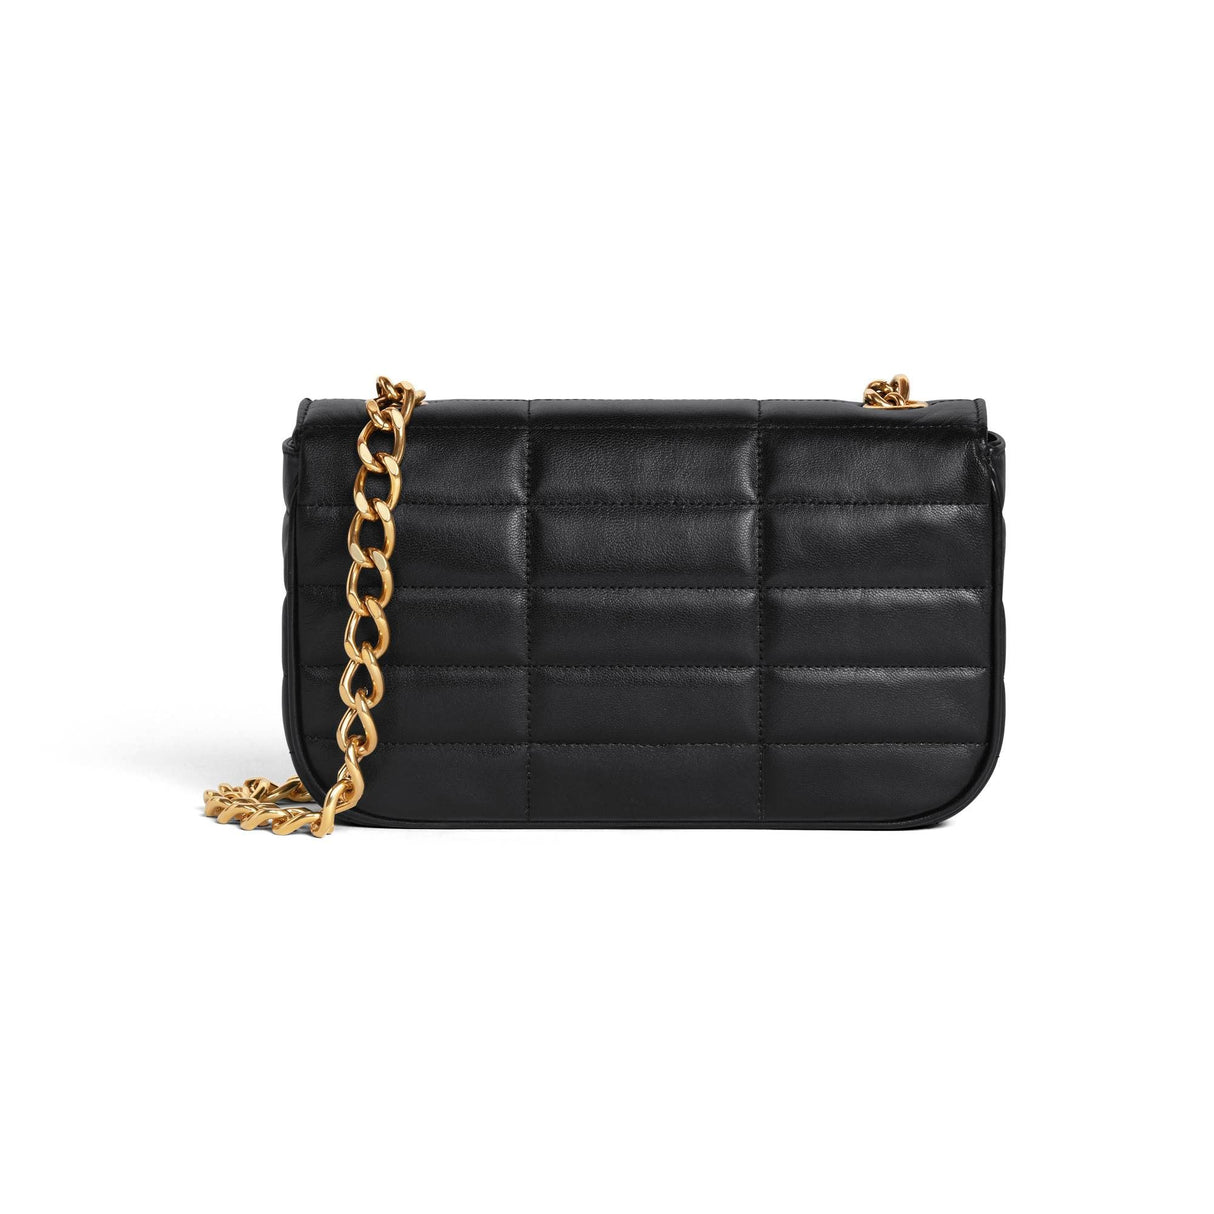 CELINE Luxurious Black Shoulder Handbag for the Modern Fashionista